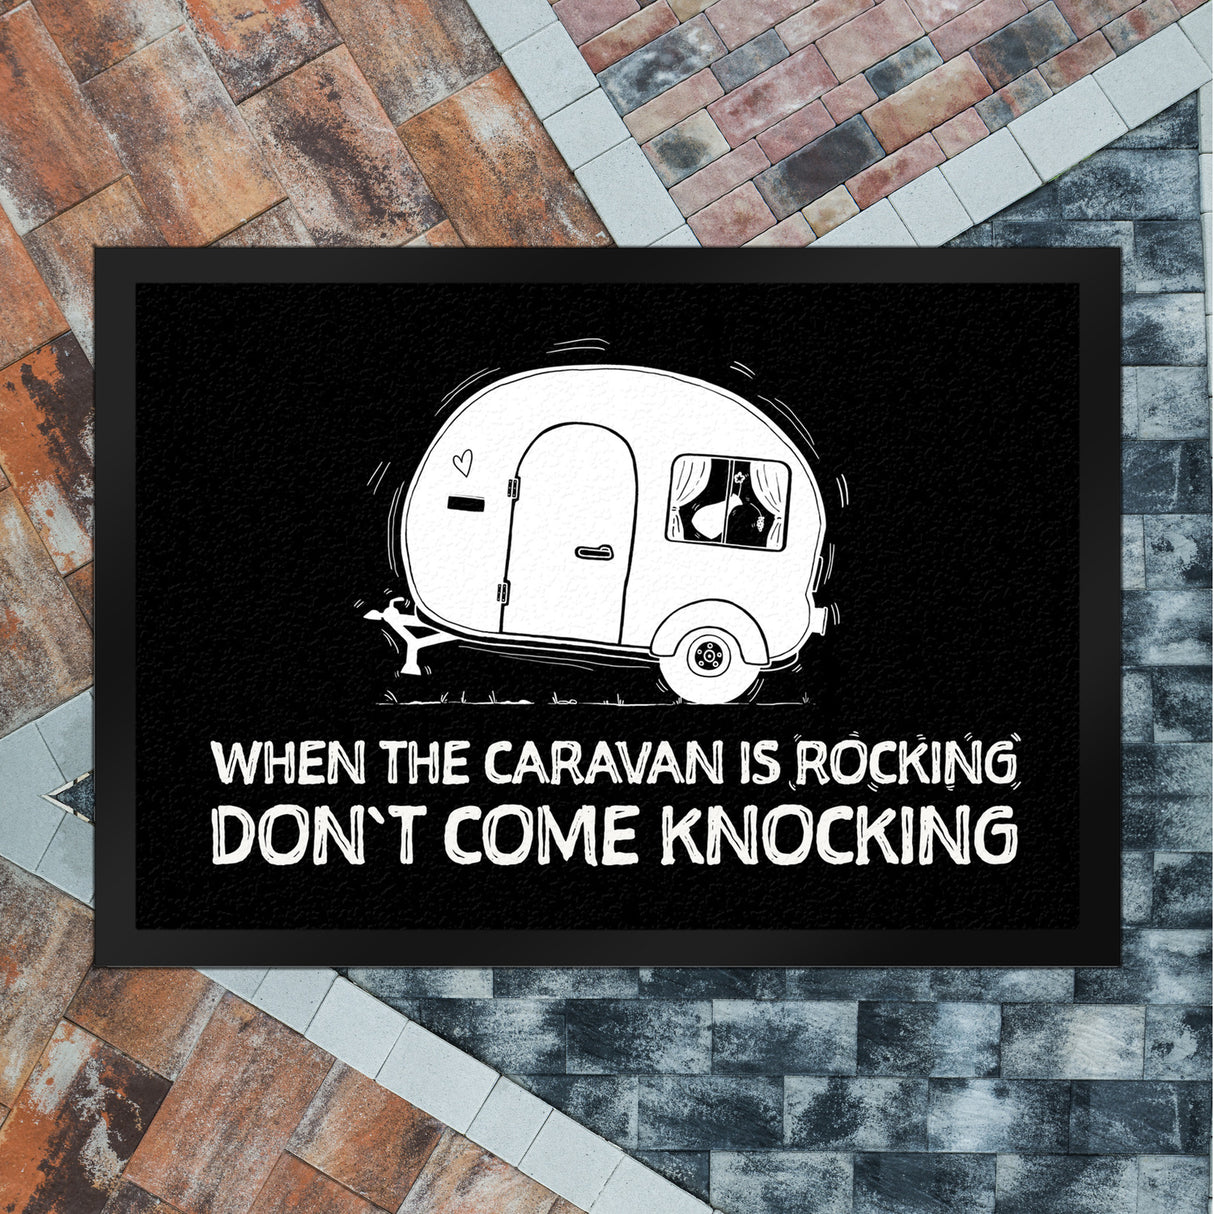 When the caravan is rocking Fußmatte mit Wohnwagen Motiv